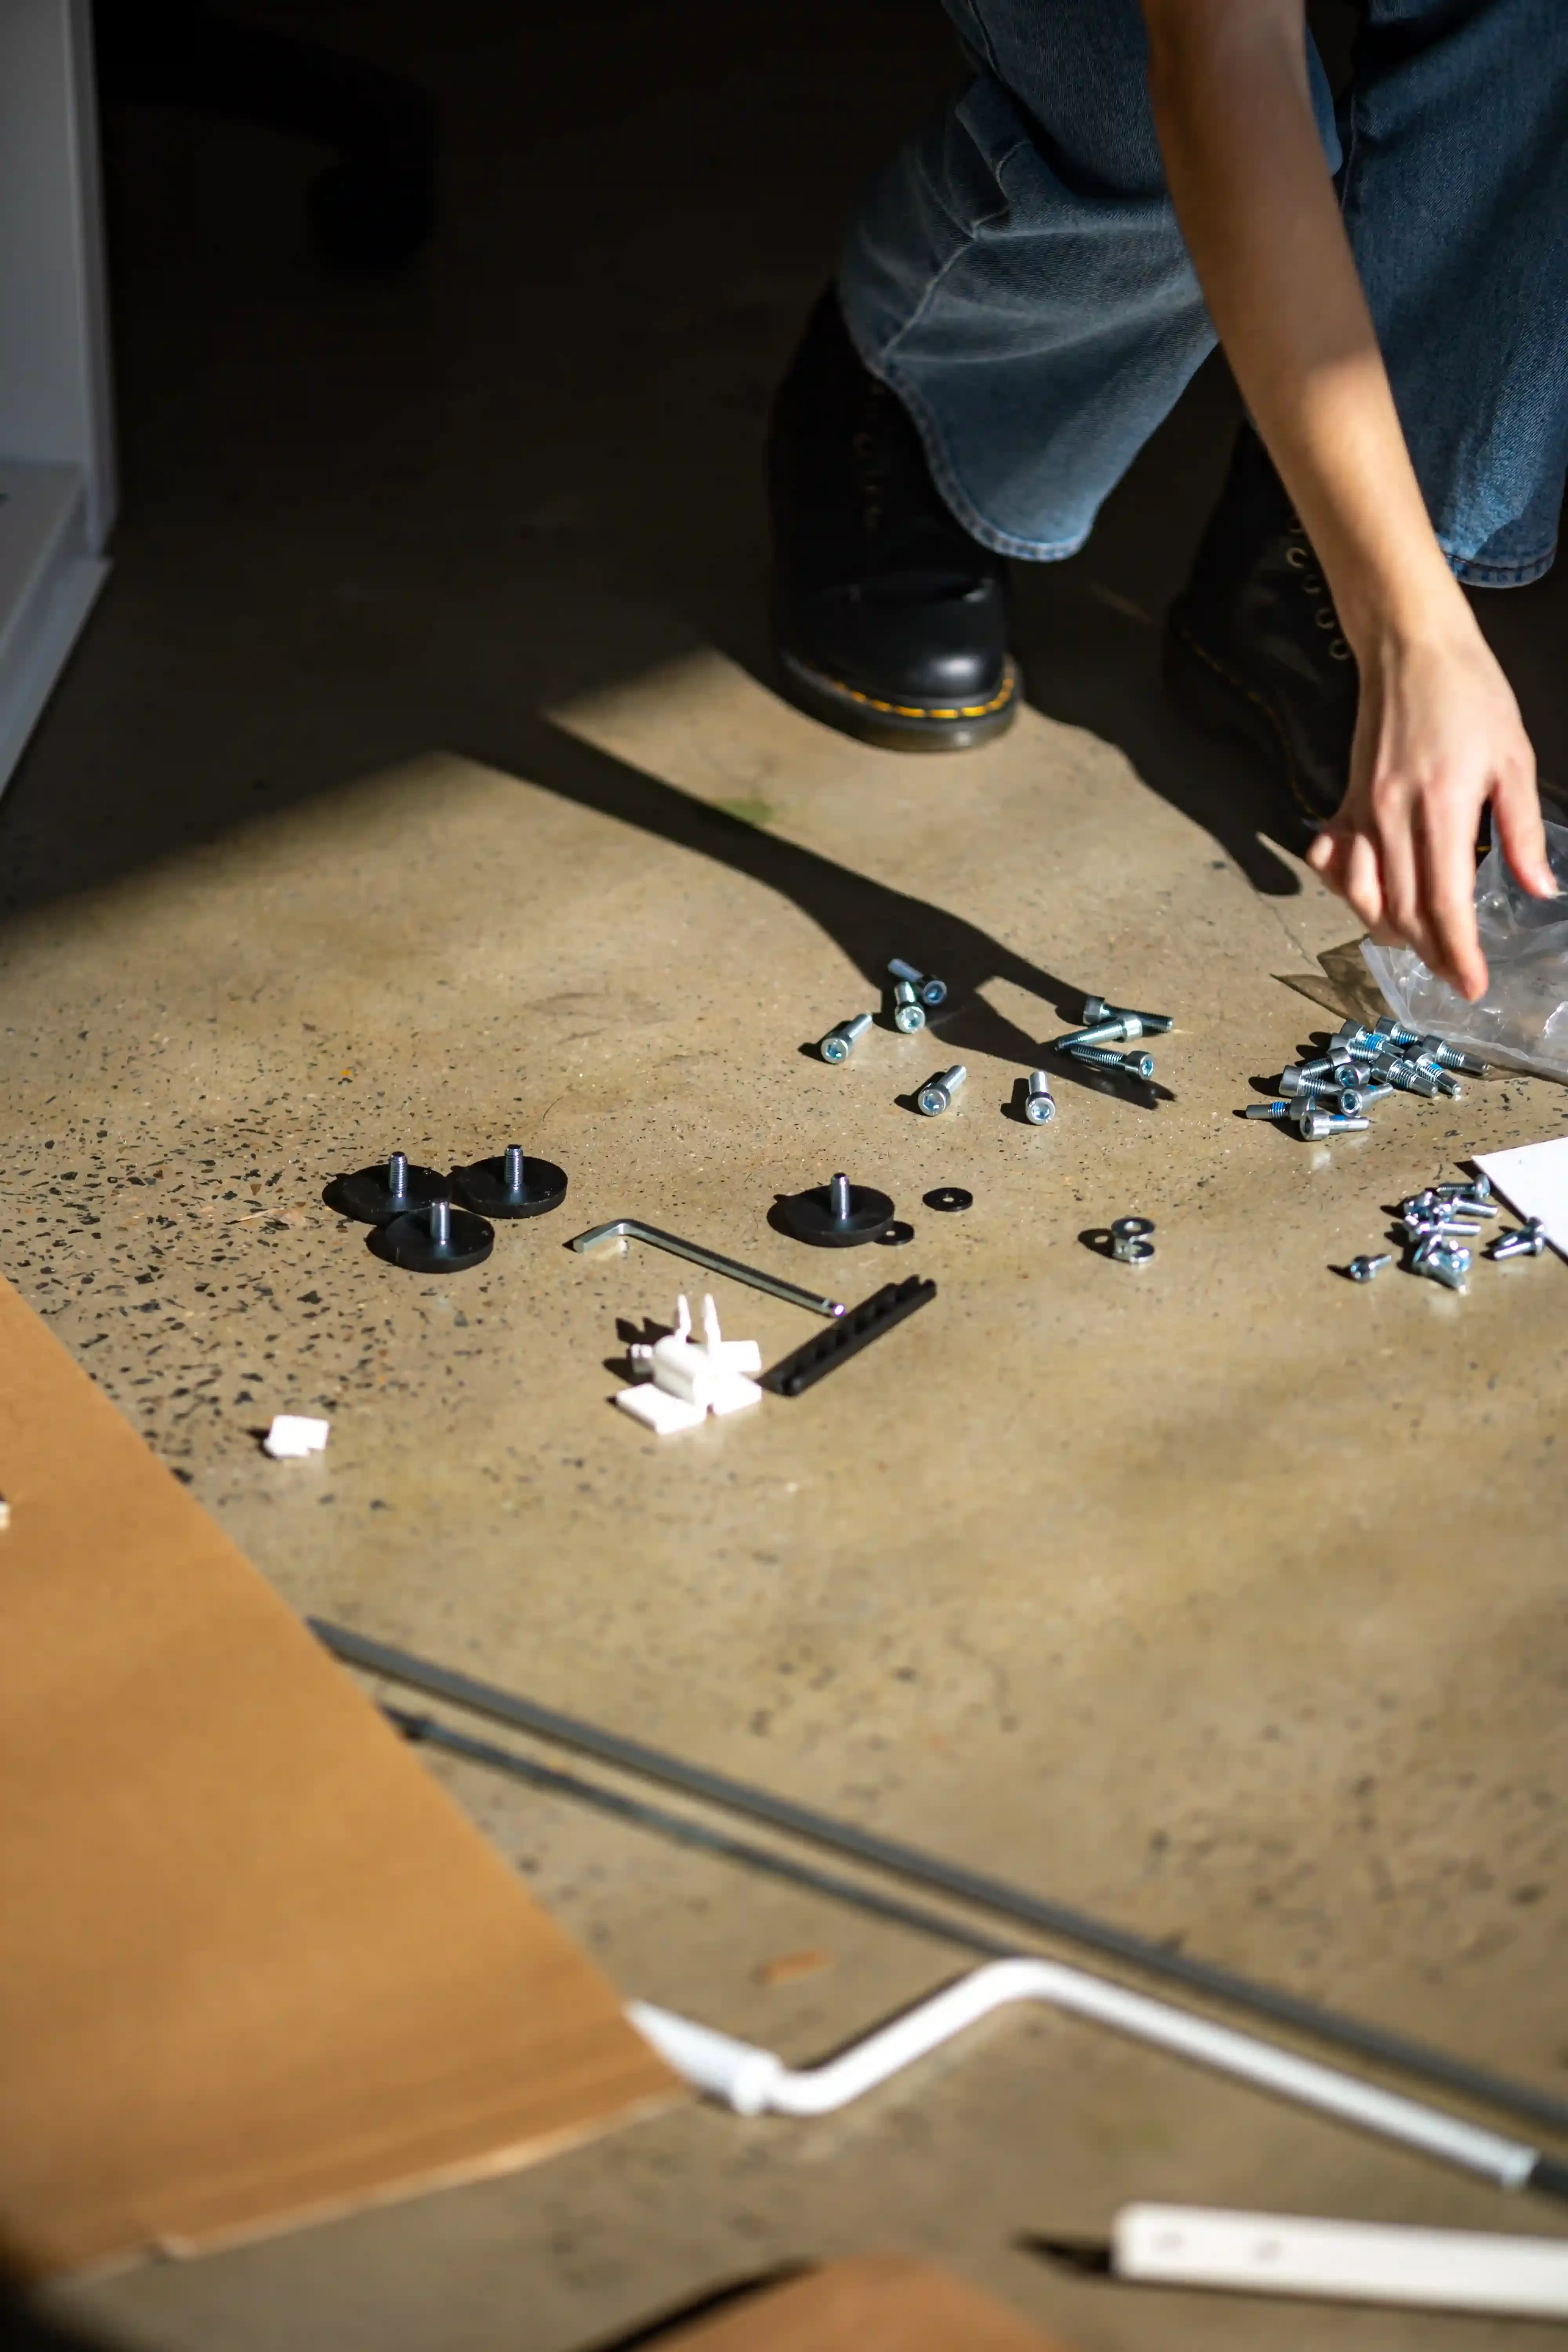 

Une image d'une prise électrique défectueuse avec des outils de réparation à côté, montrant une personne en train de réparer la prise. La photo illust